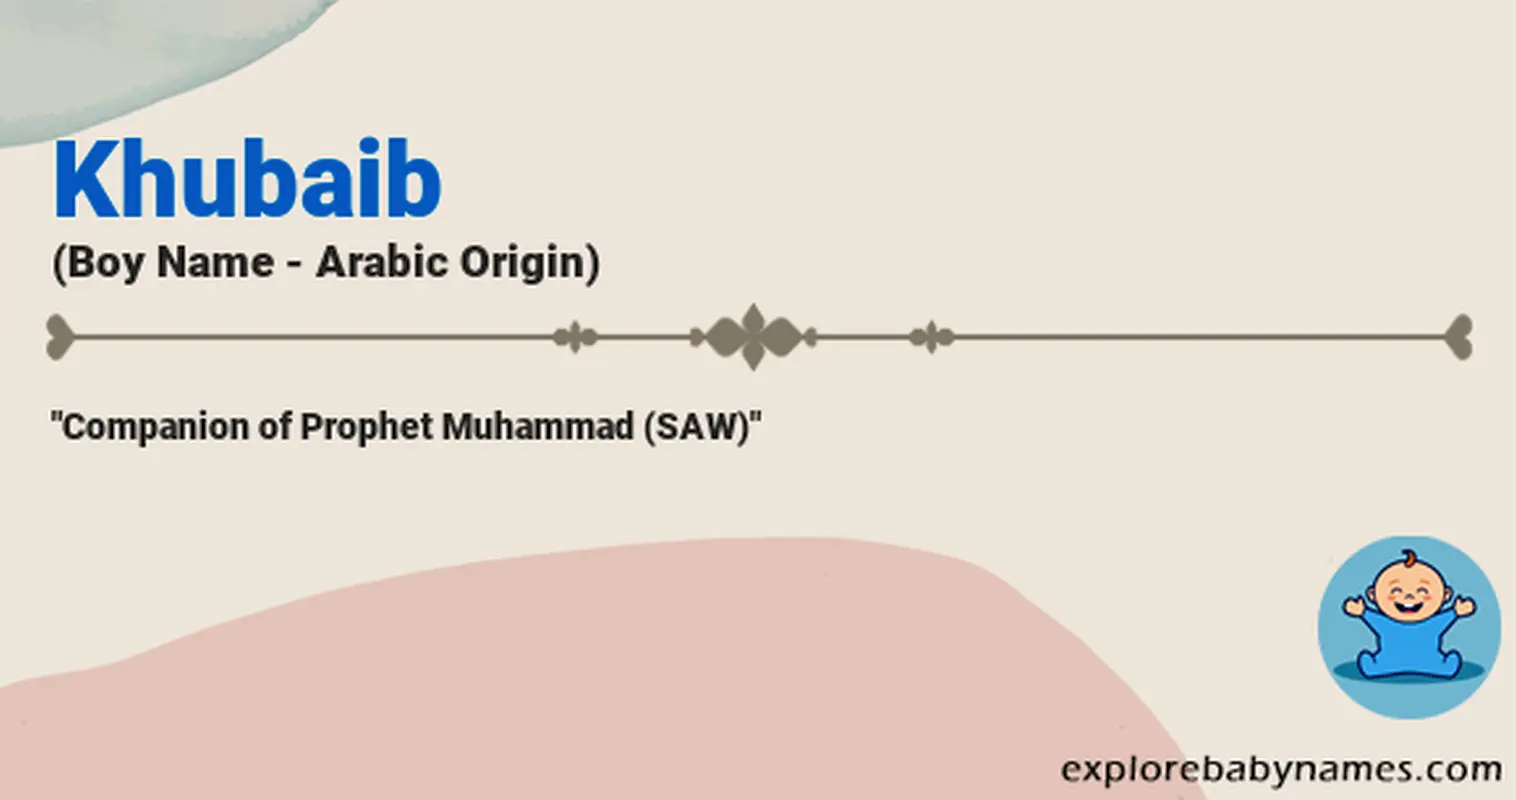 Meaning of Khubaib